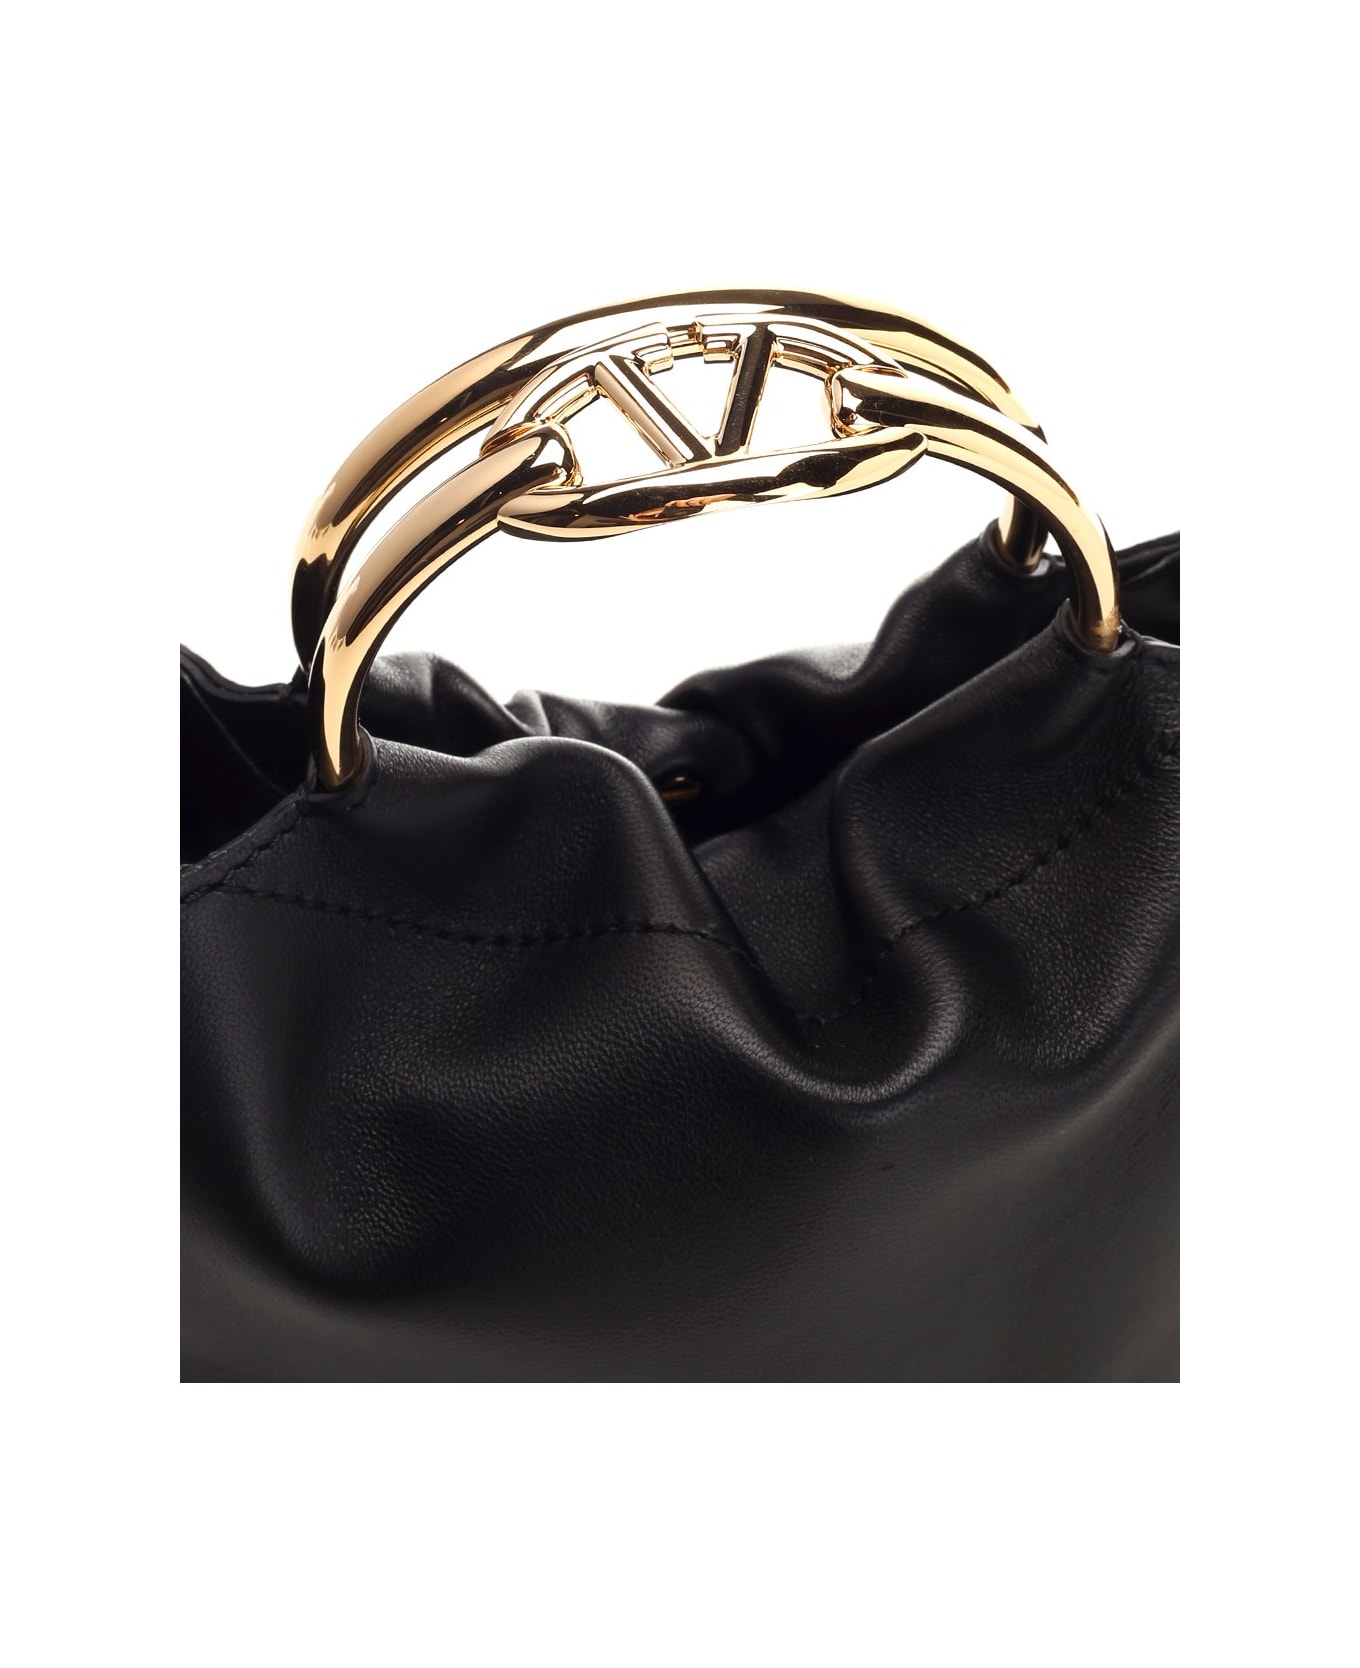 Valentino Garavani Bucket Handbag - Black トートバッグ